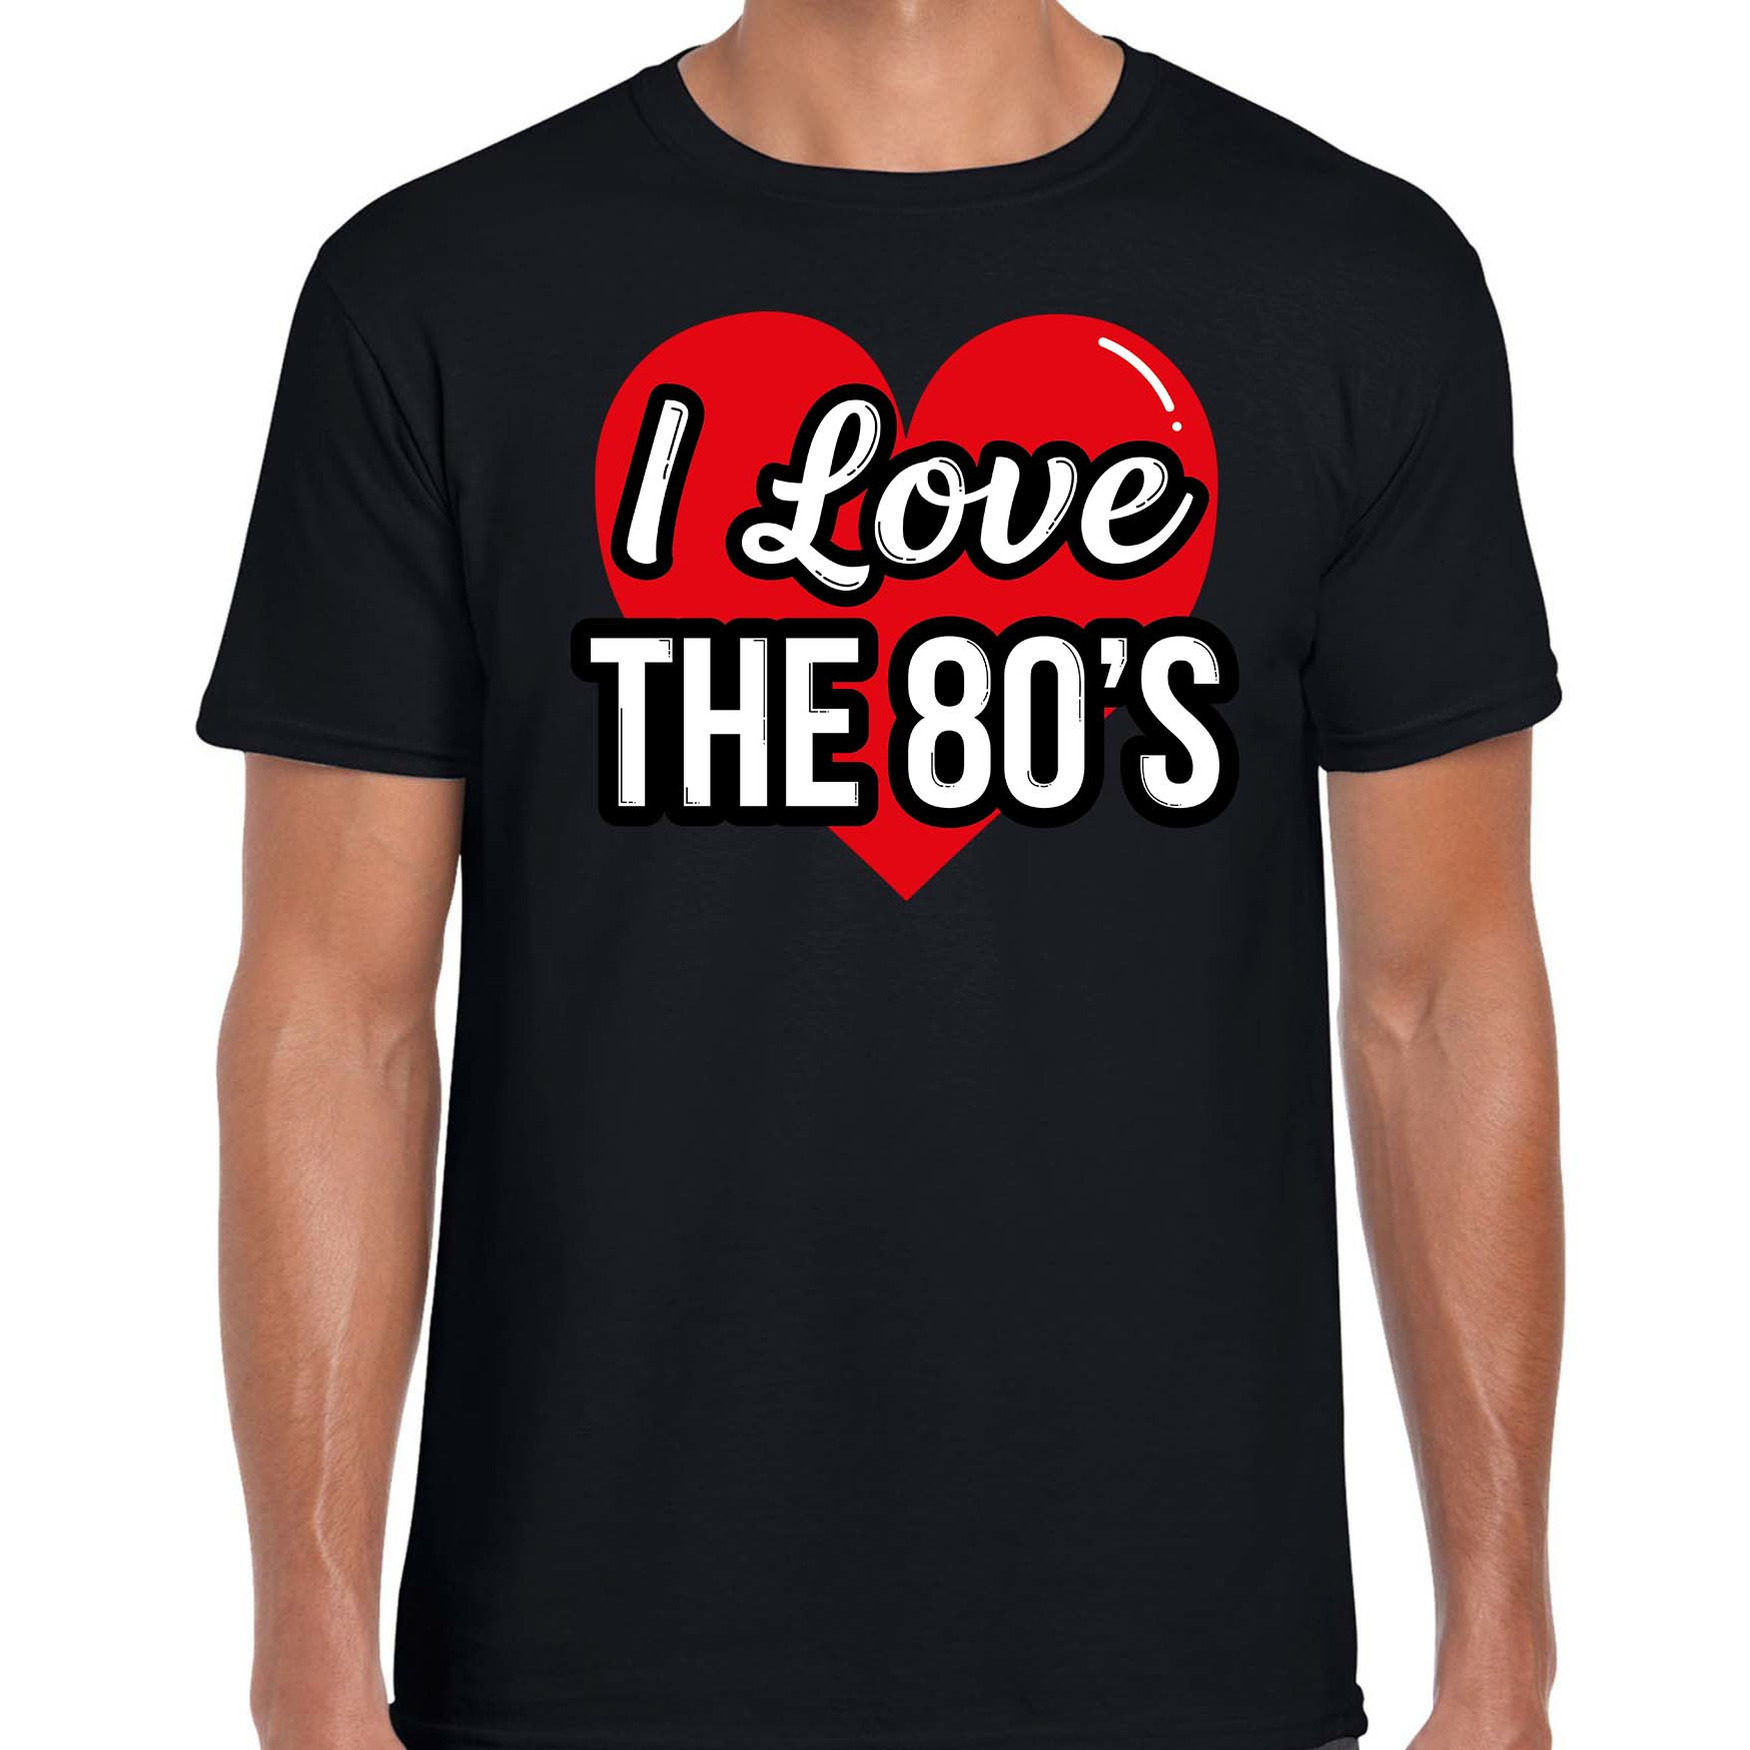 I love 80s verkleed t-shirt zwart voor heren 80s party verkleed outfit